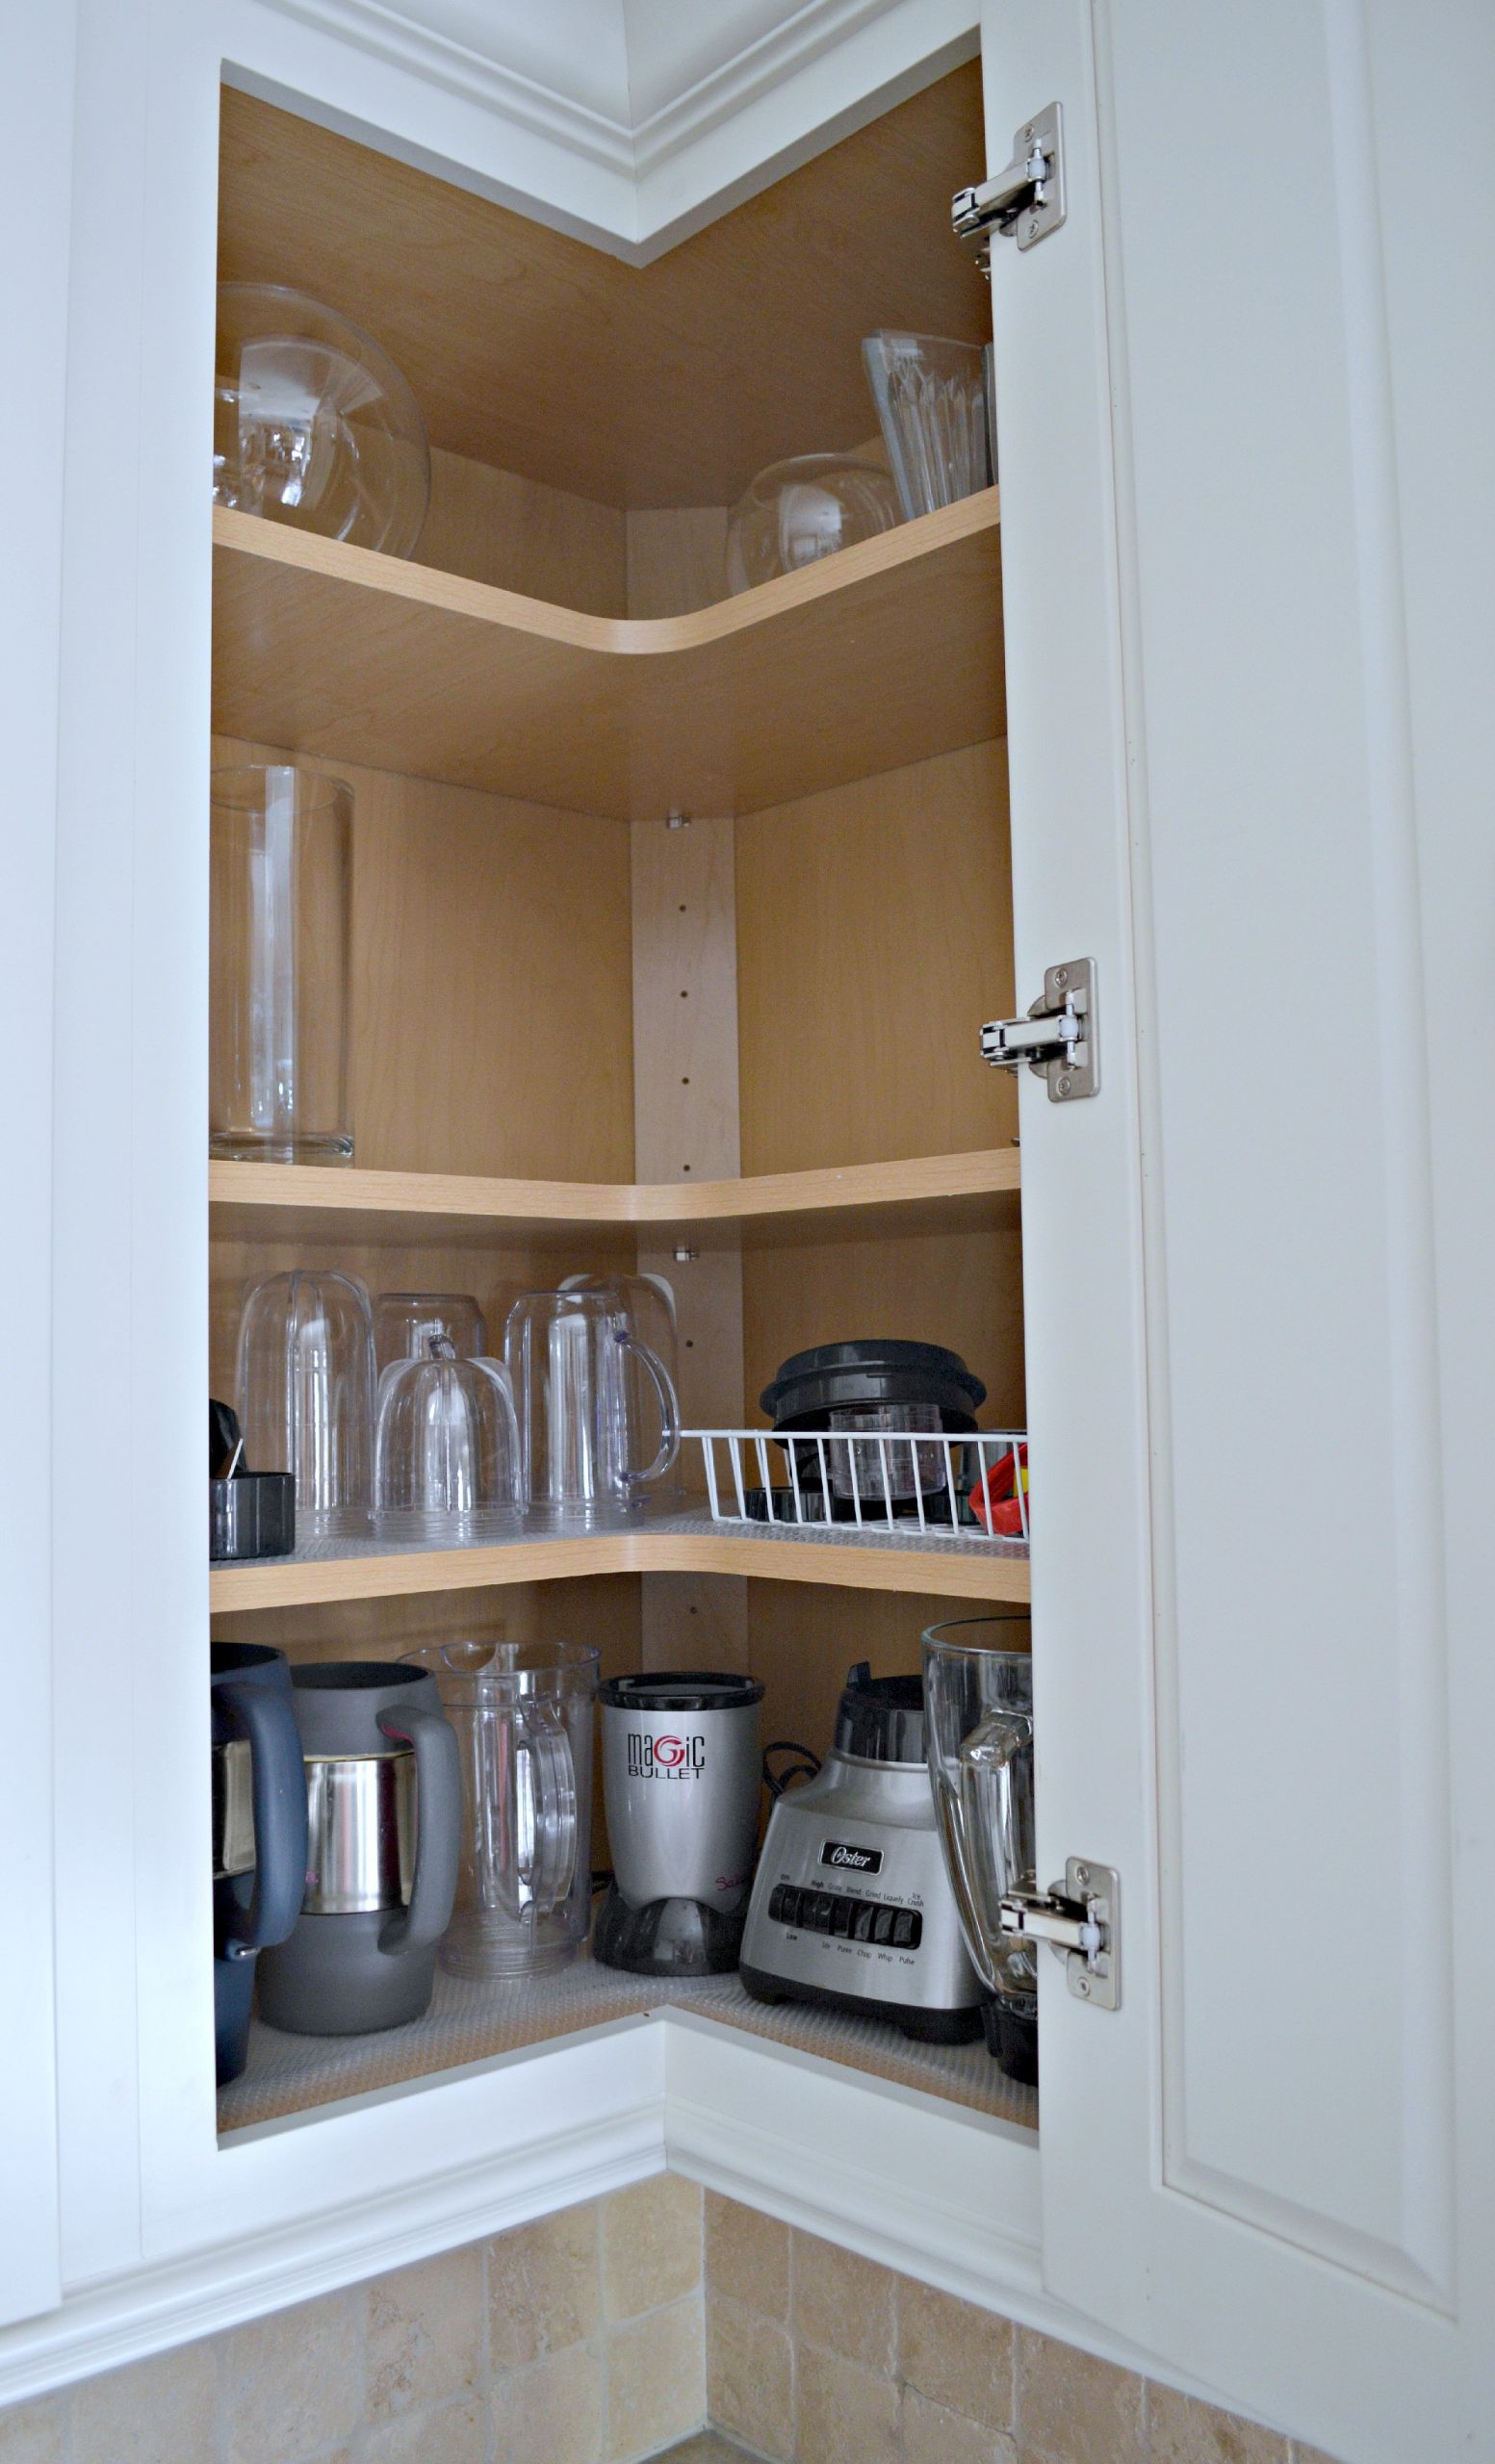 Upper Corner Kitchen Cabinet Ideas
 Tips For Designing An Organized Kitchen